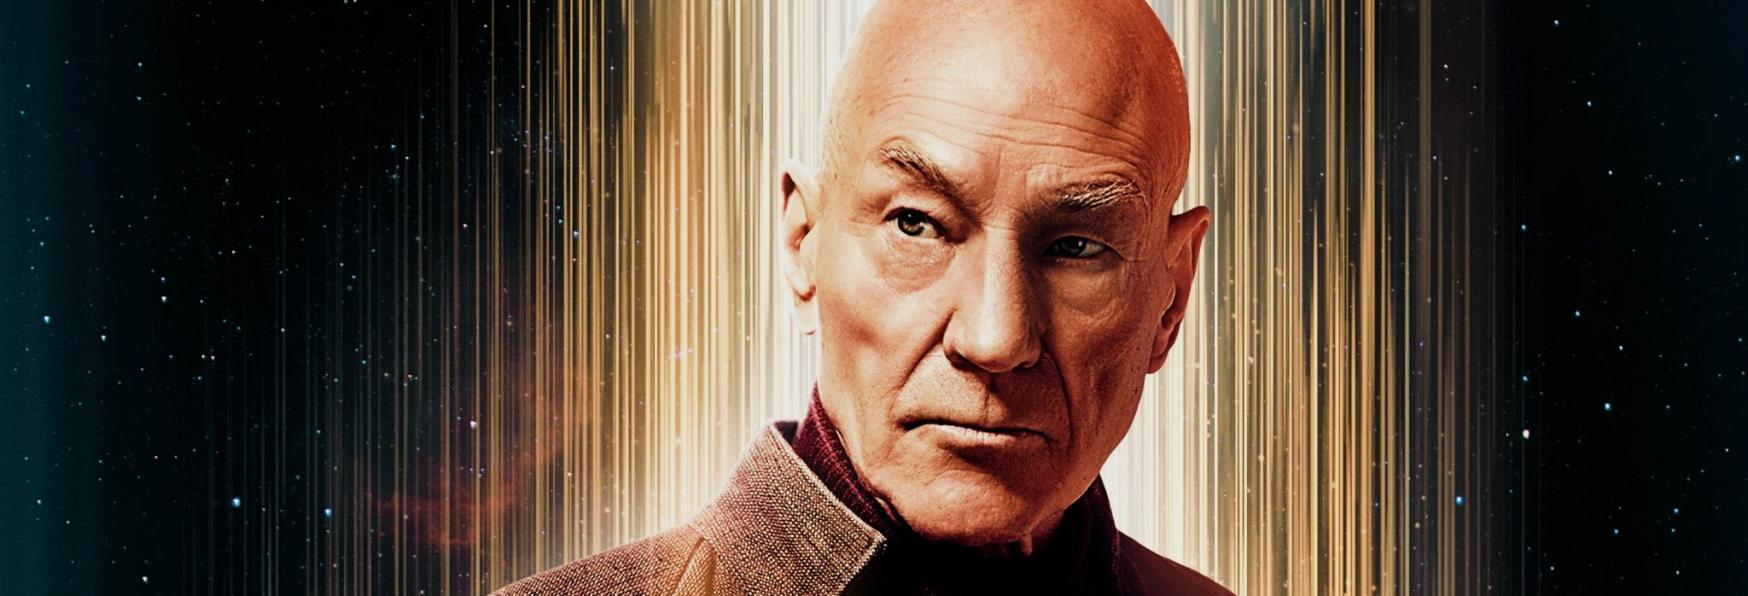 Star Trek: Picard 3 - La nuova Stagione ottiene il Punteggio Perfetto su Rotten Tomatoes